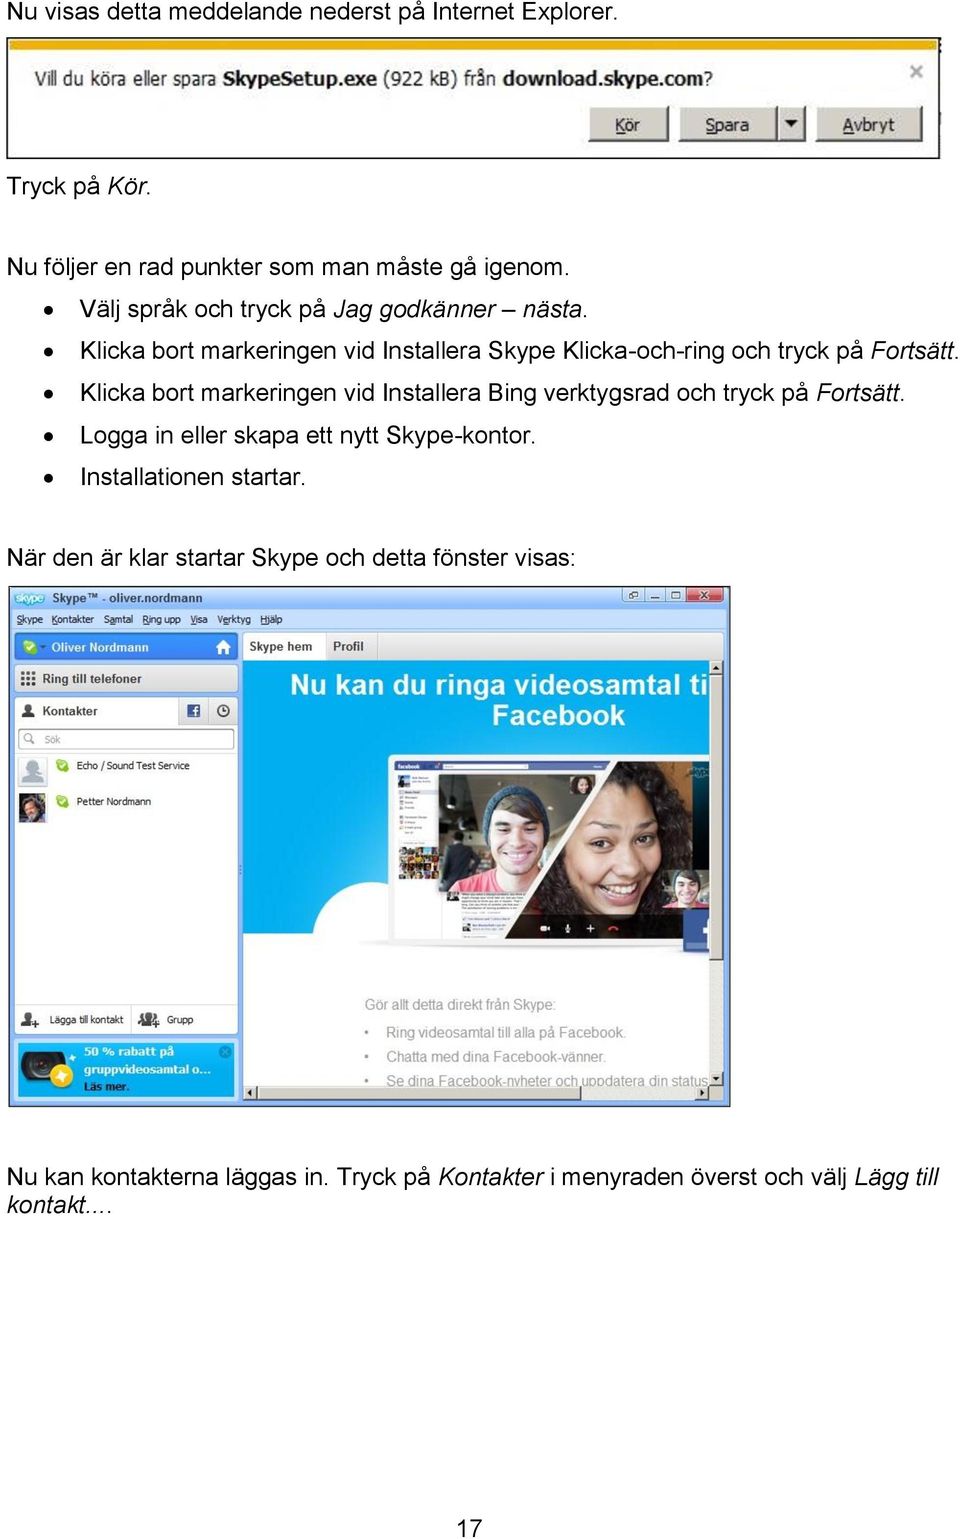 Klicka bort markeringen vid Installera Bing verktygsrad och tryck på Fortsätt. Logga in eller skapa ett nytt Skype-kontor.